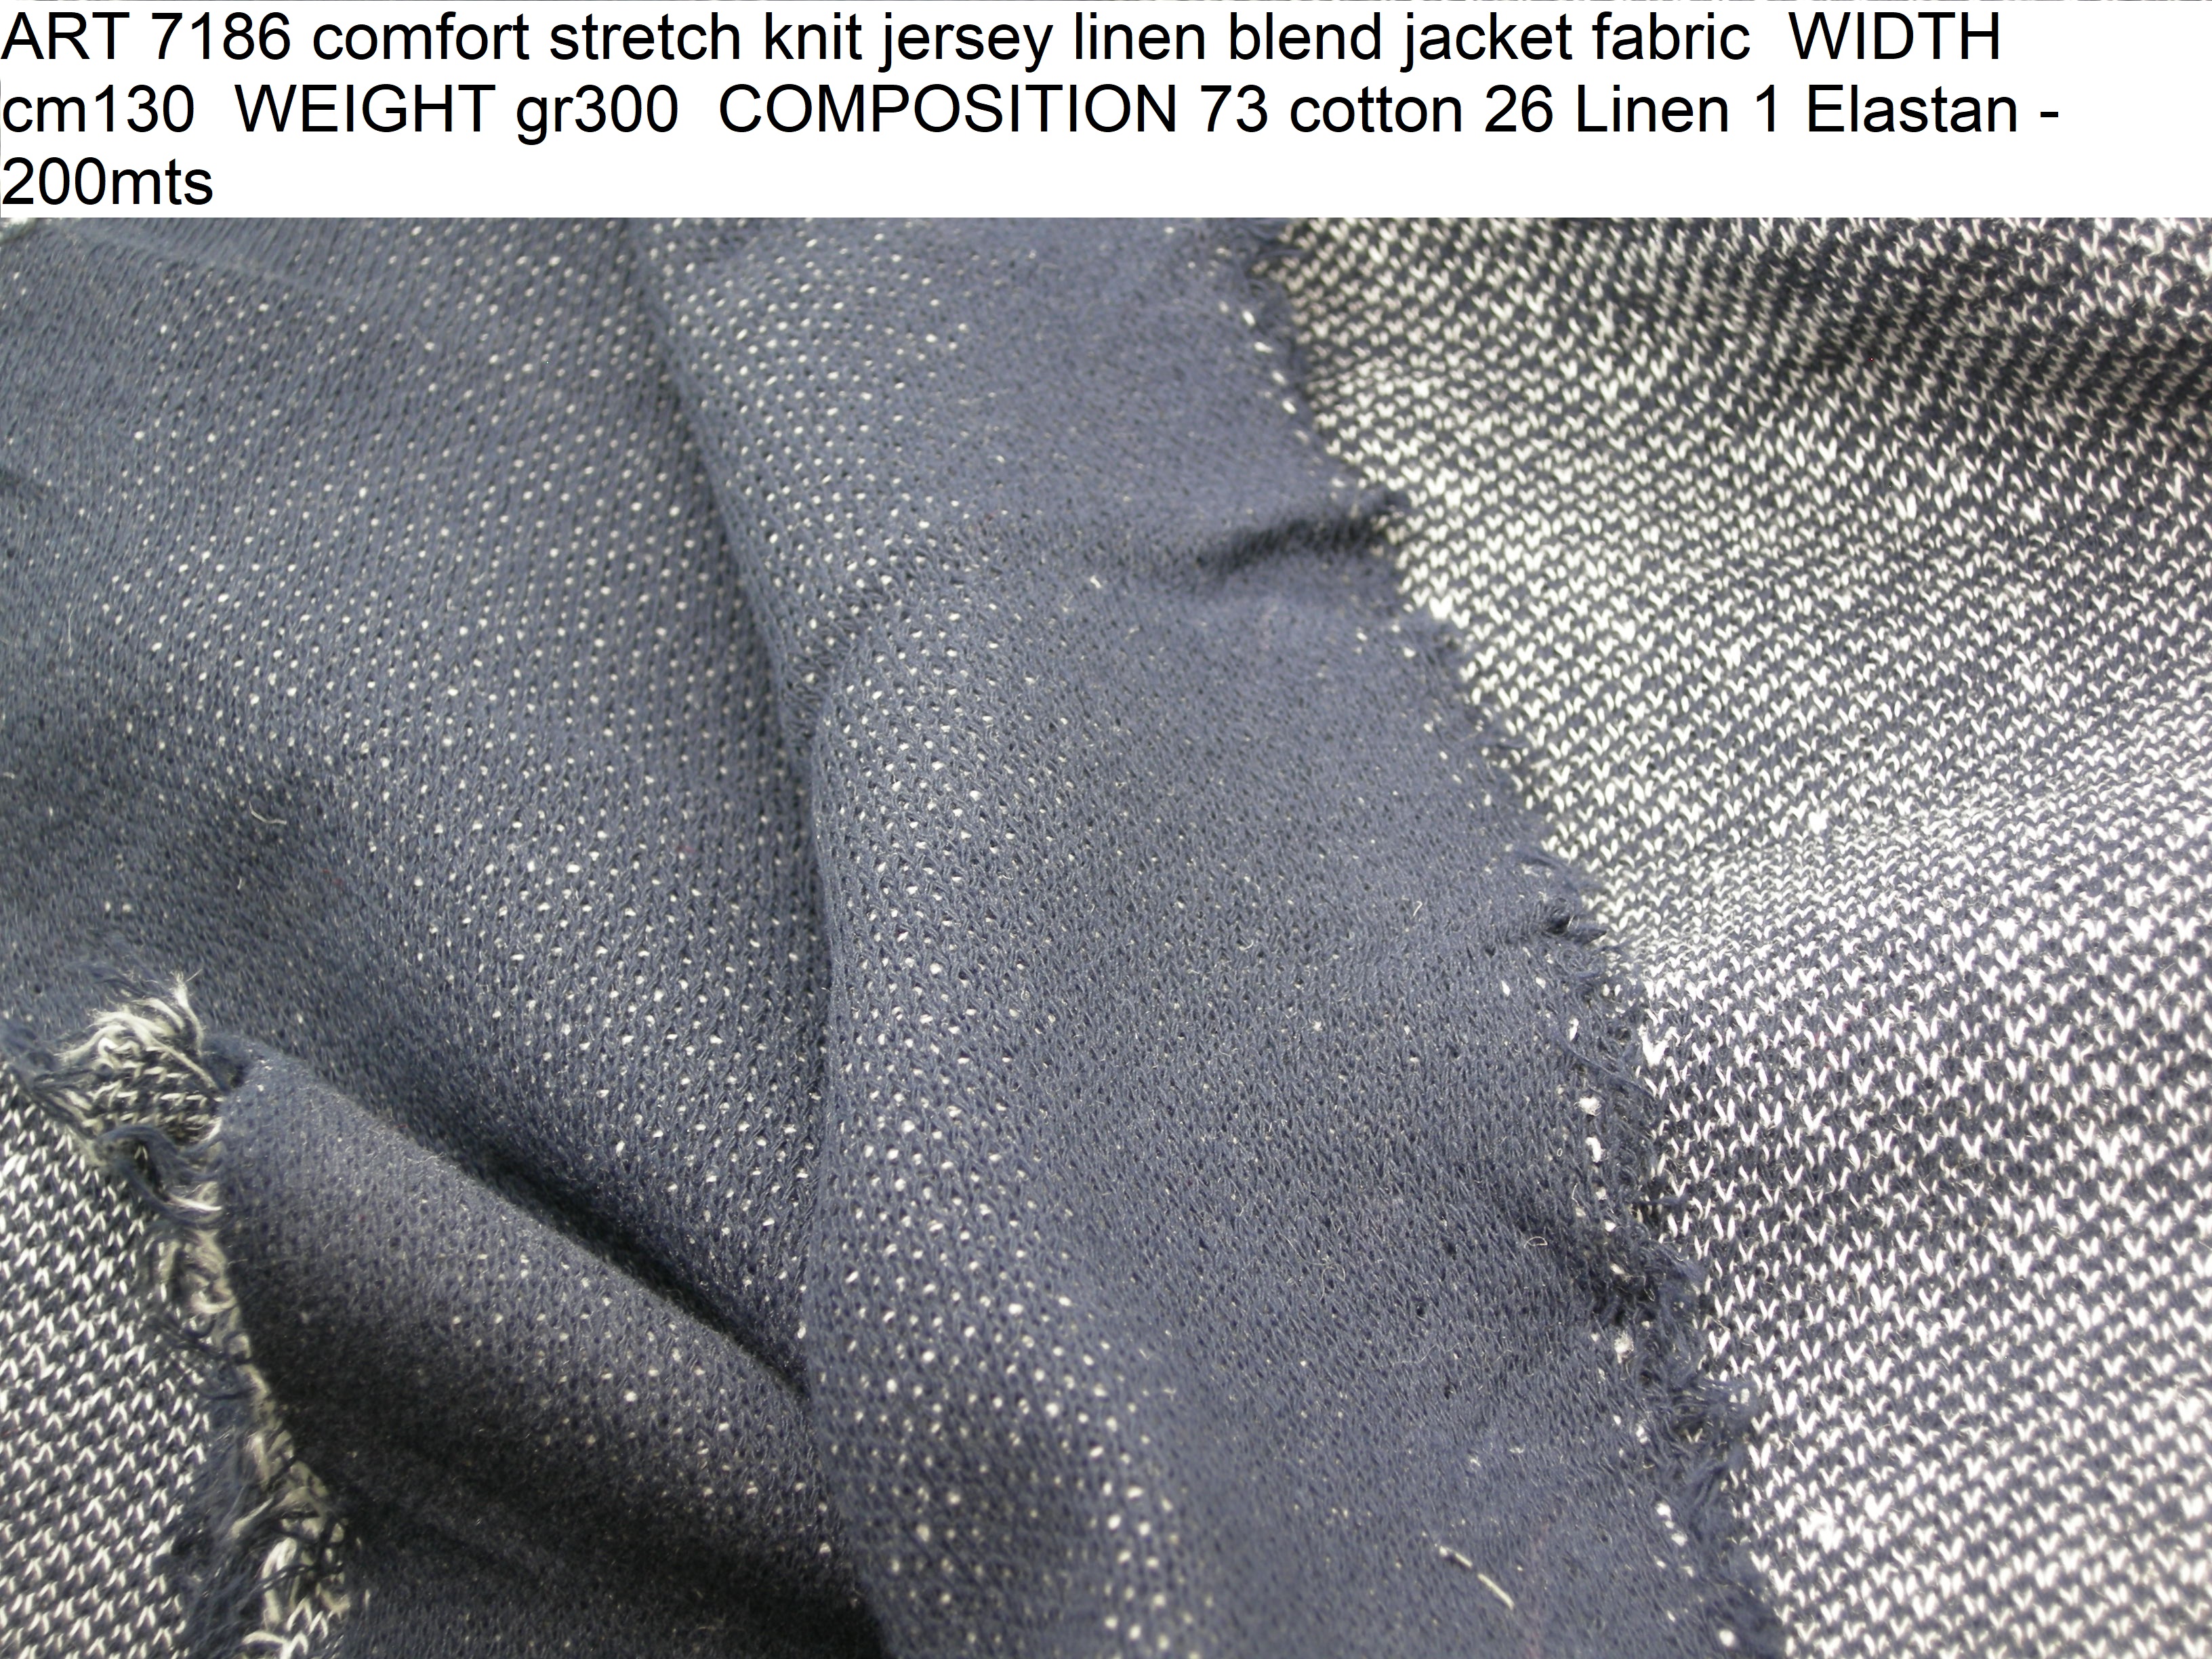 ART 7186 comfort stretch knit jersey linen blend jacket fabric WIDTH cm130 WEIGHT gr300 COMPOSITION 73 cotton 26 Linen 1 Elastan - 200mts